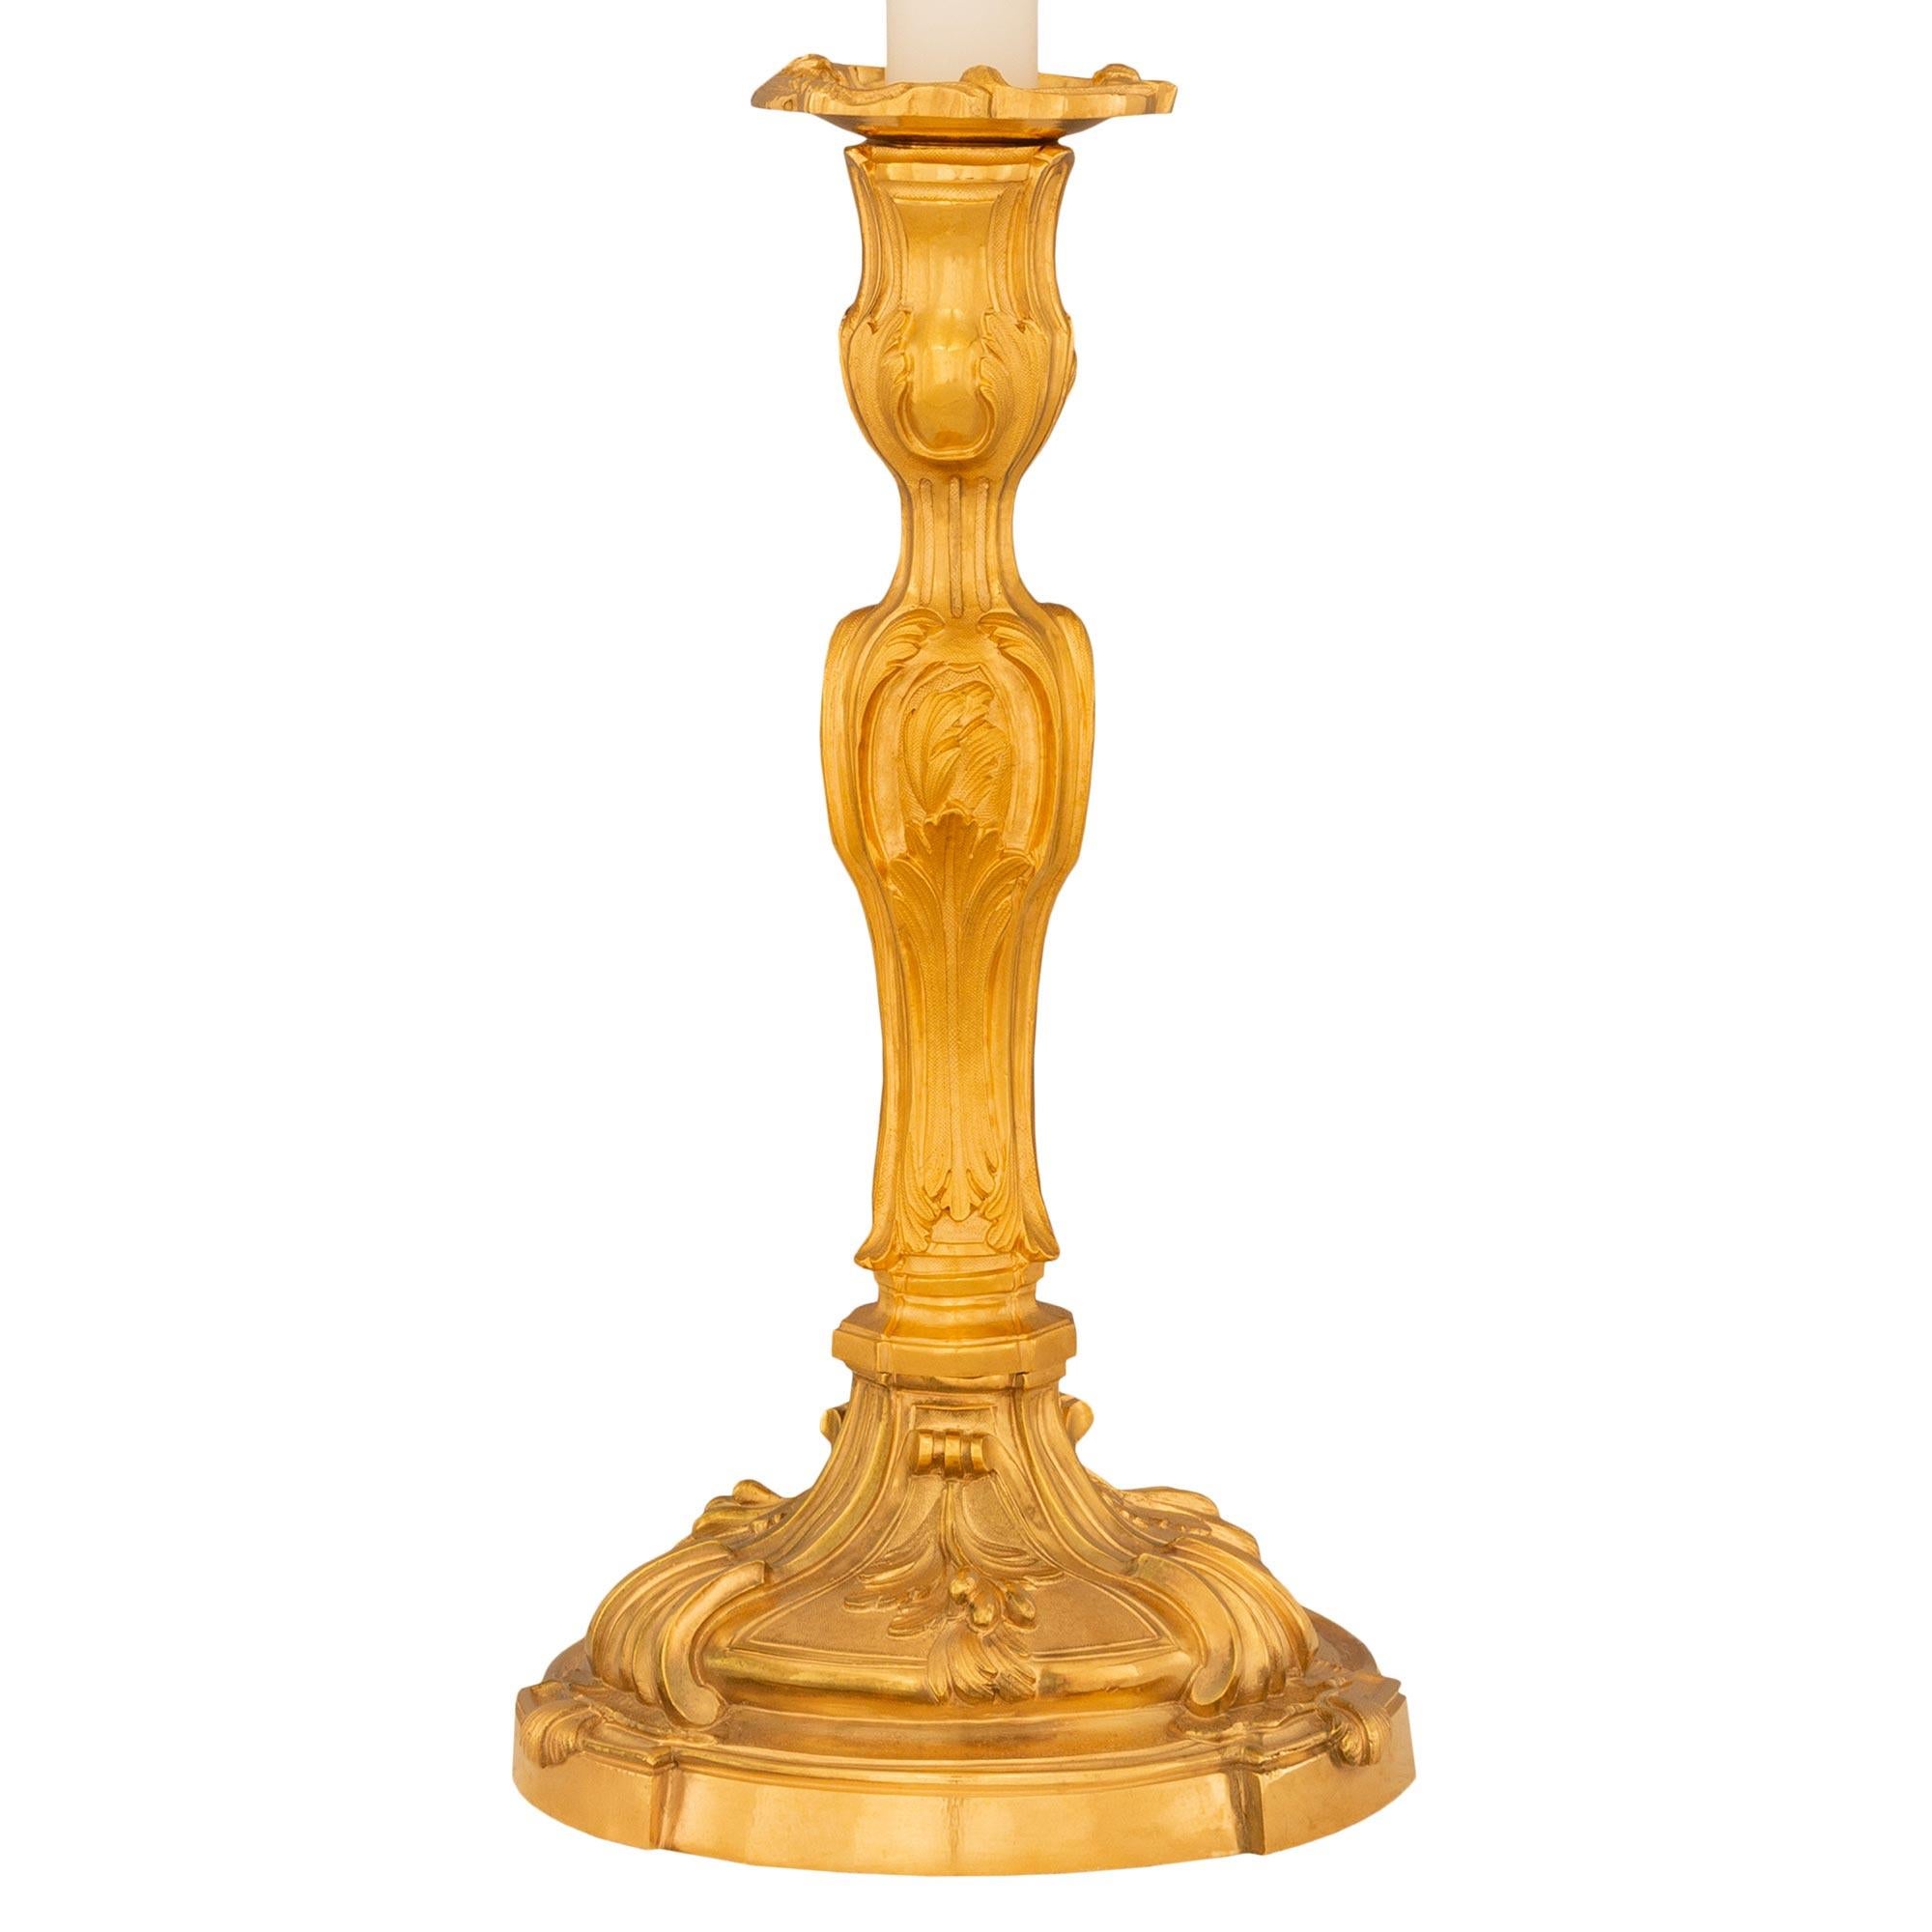 Ravissante paire de lampes-bougies en bronze doré de style Louis XV du XIXe siècle. Chaque lampe est surmontée d'une base circulaire avec trois supports en saillie décorés de feuilles d'acanthe enroulées. Le support central présente d'autres